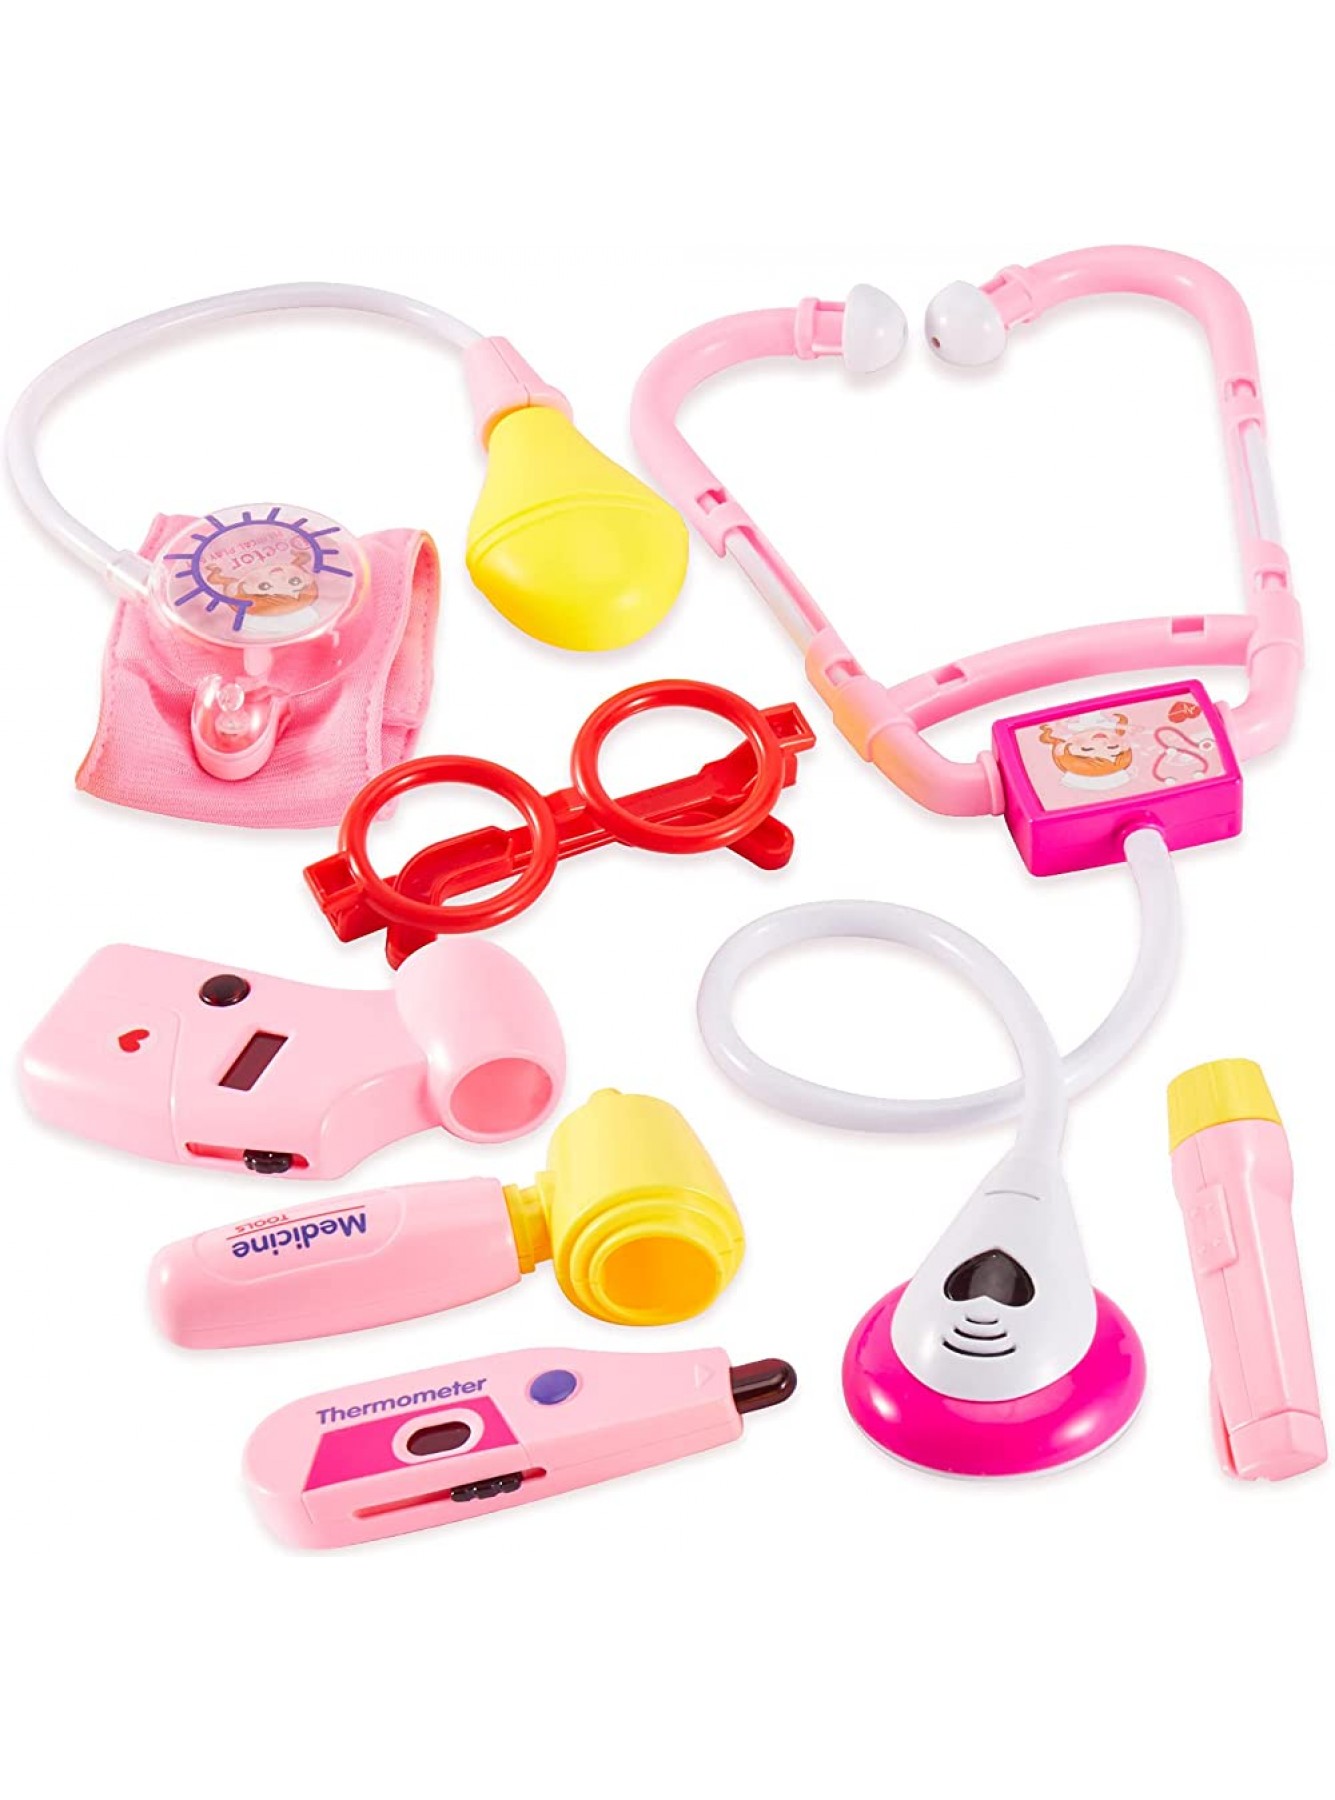 HERSITY Arzt Kinder Spielzeug mit Ton und Licht Geschenke für 3 4 5 Jahre Mädchen Junge Kinder - B08LZCK4JY